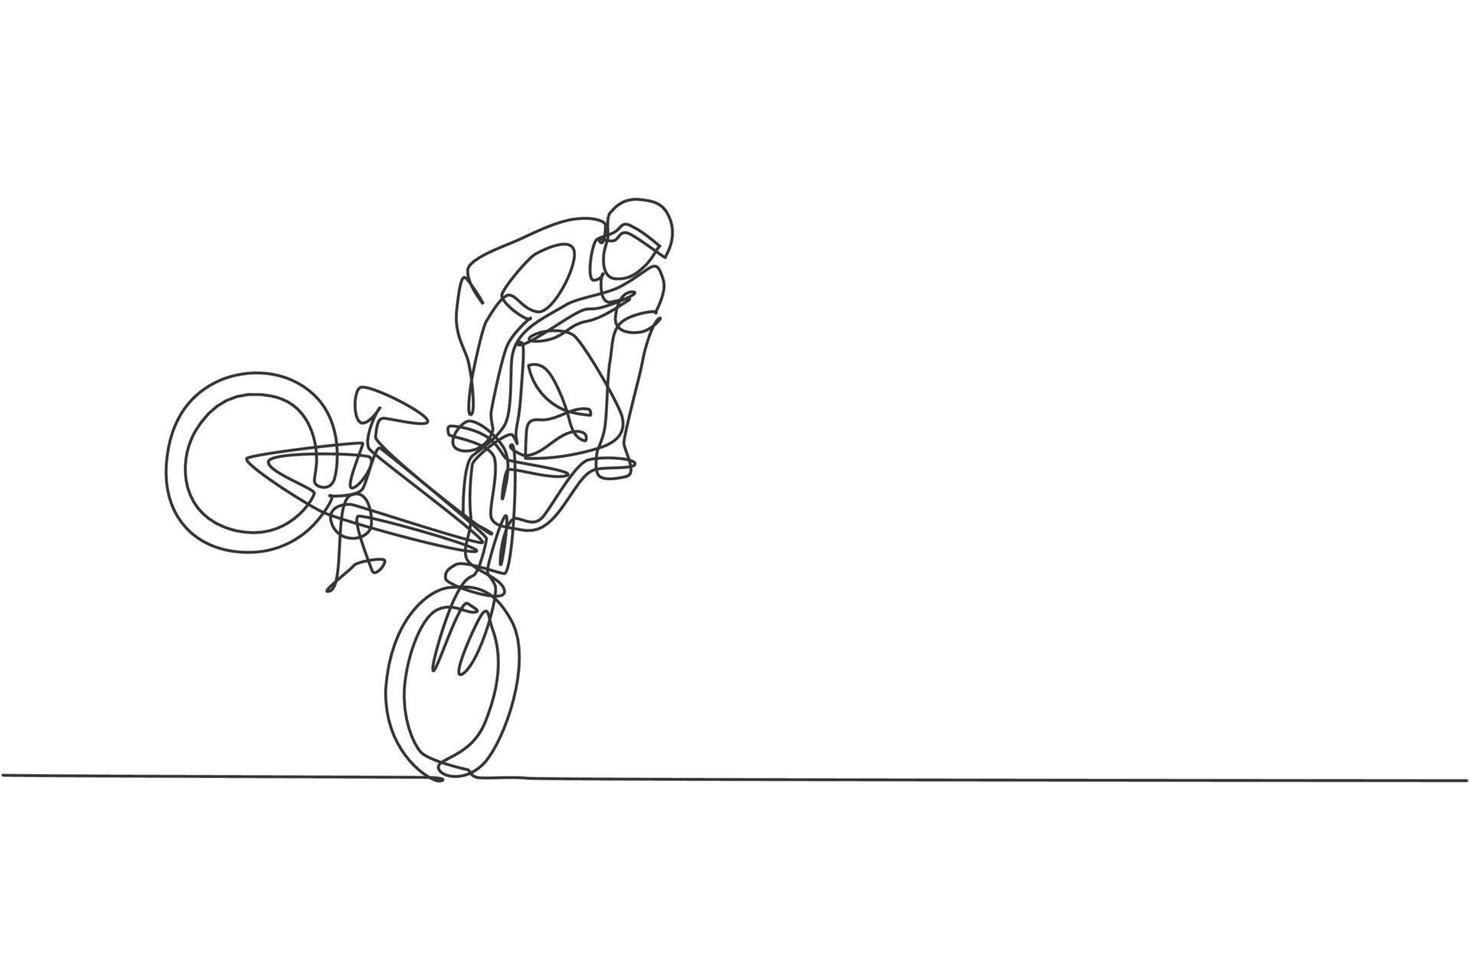 en kontinuerlig linjeteckning av ung bmx-cyklist som utför farliga trick på skatepark. extrem sport koncept vektor illustration. dynamisk enda rad rita design för event marknadsföring affisch